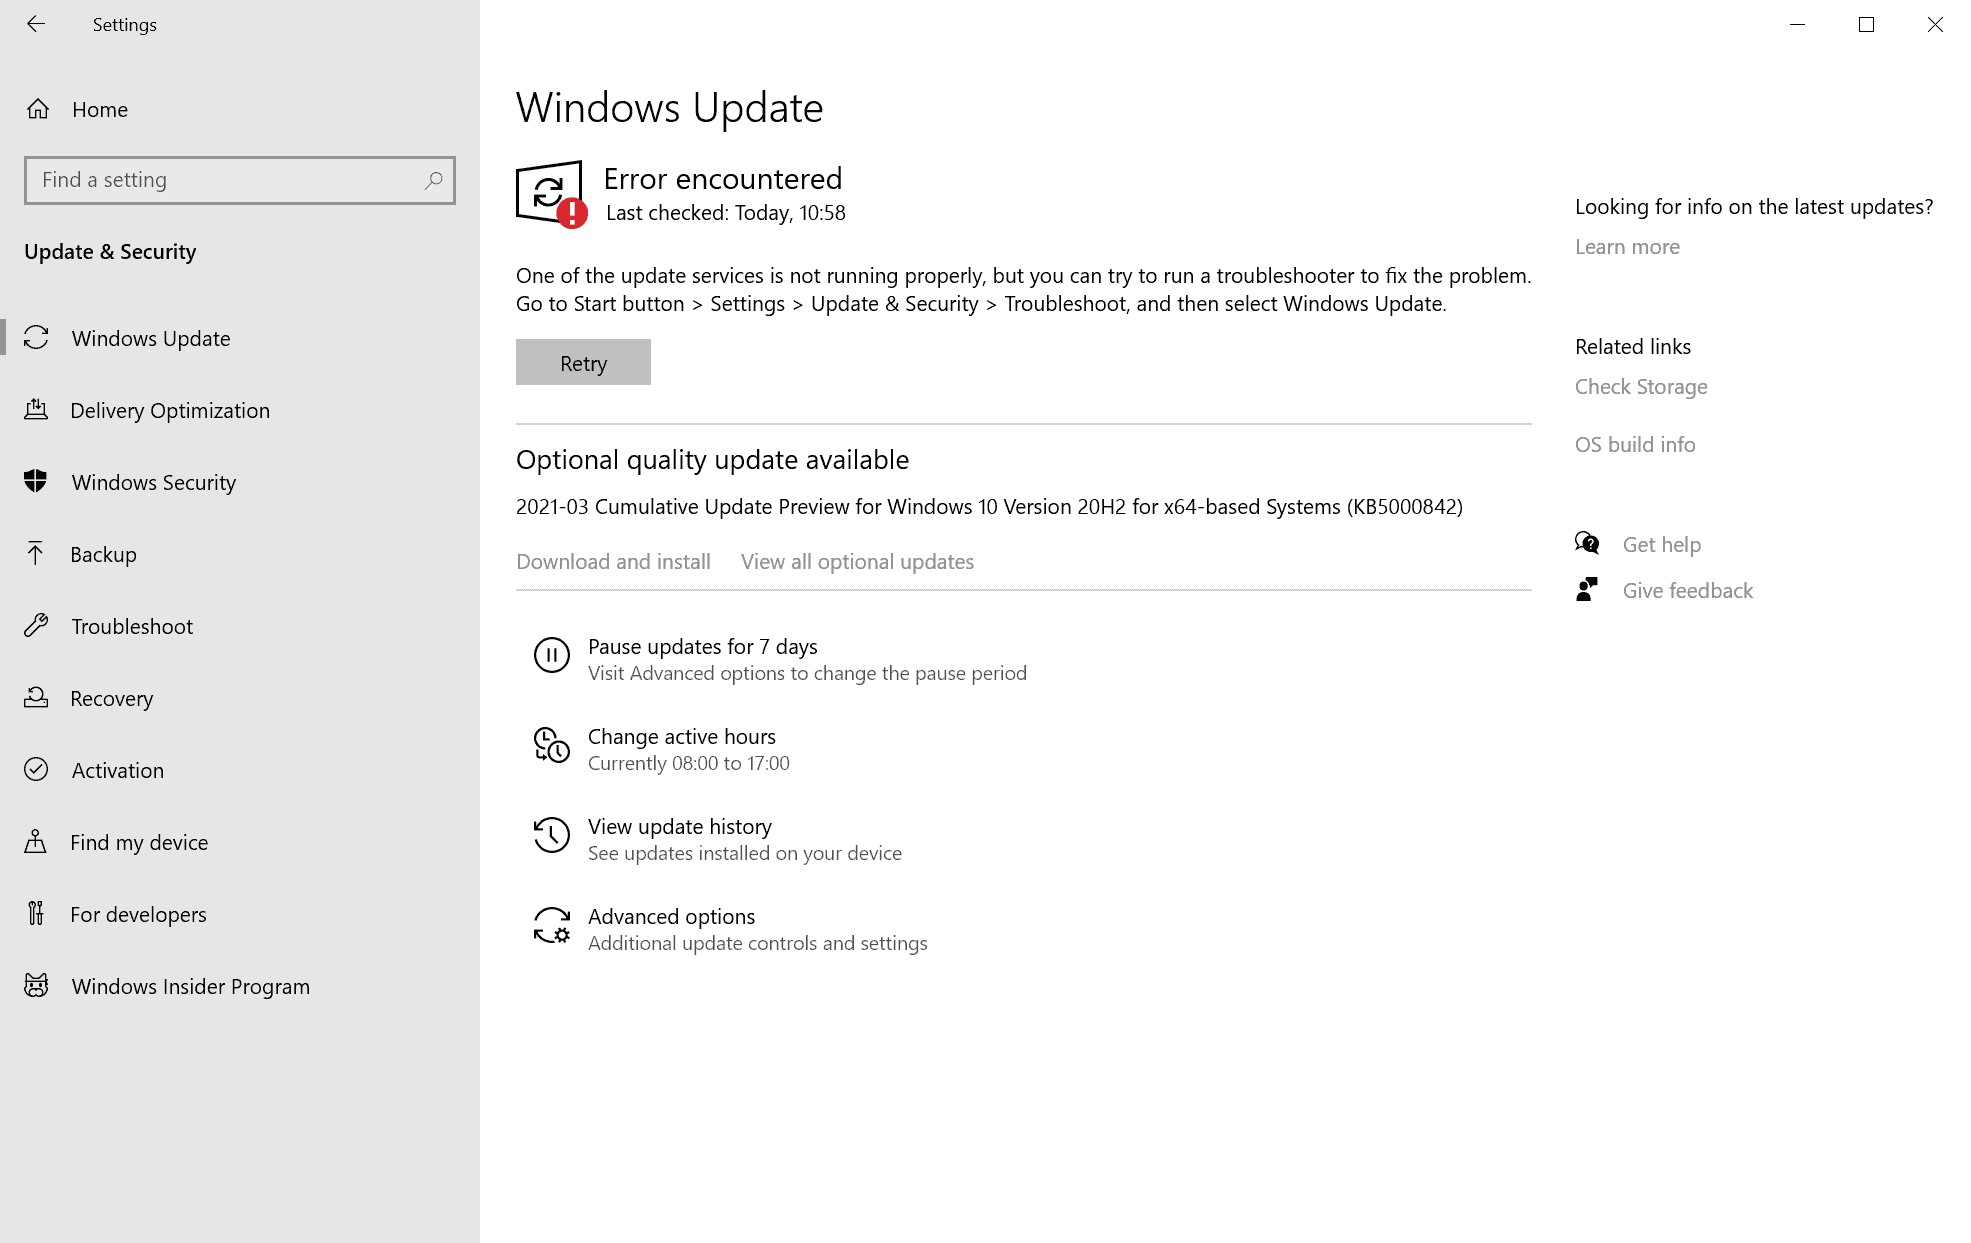 windows update error 0x80070422